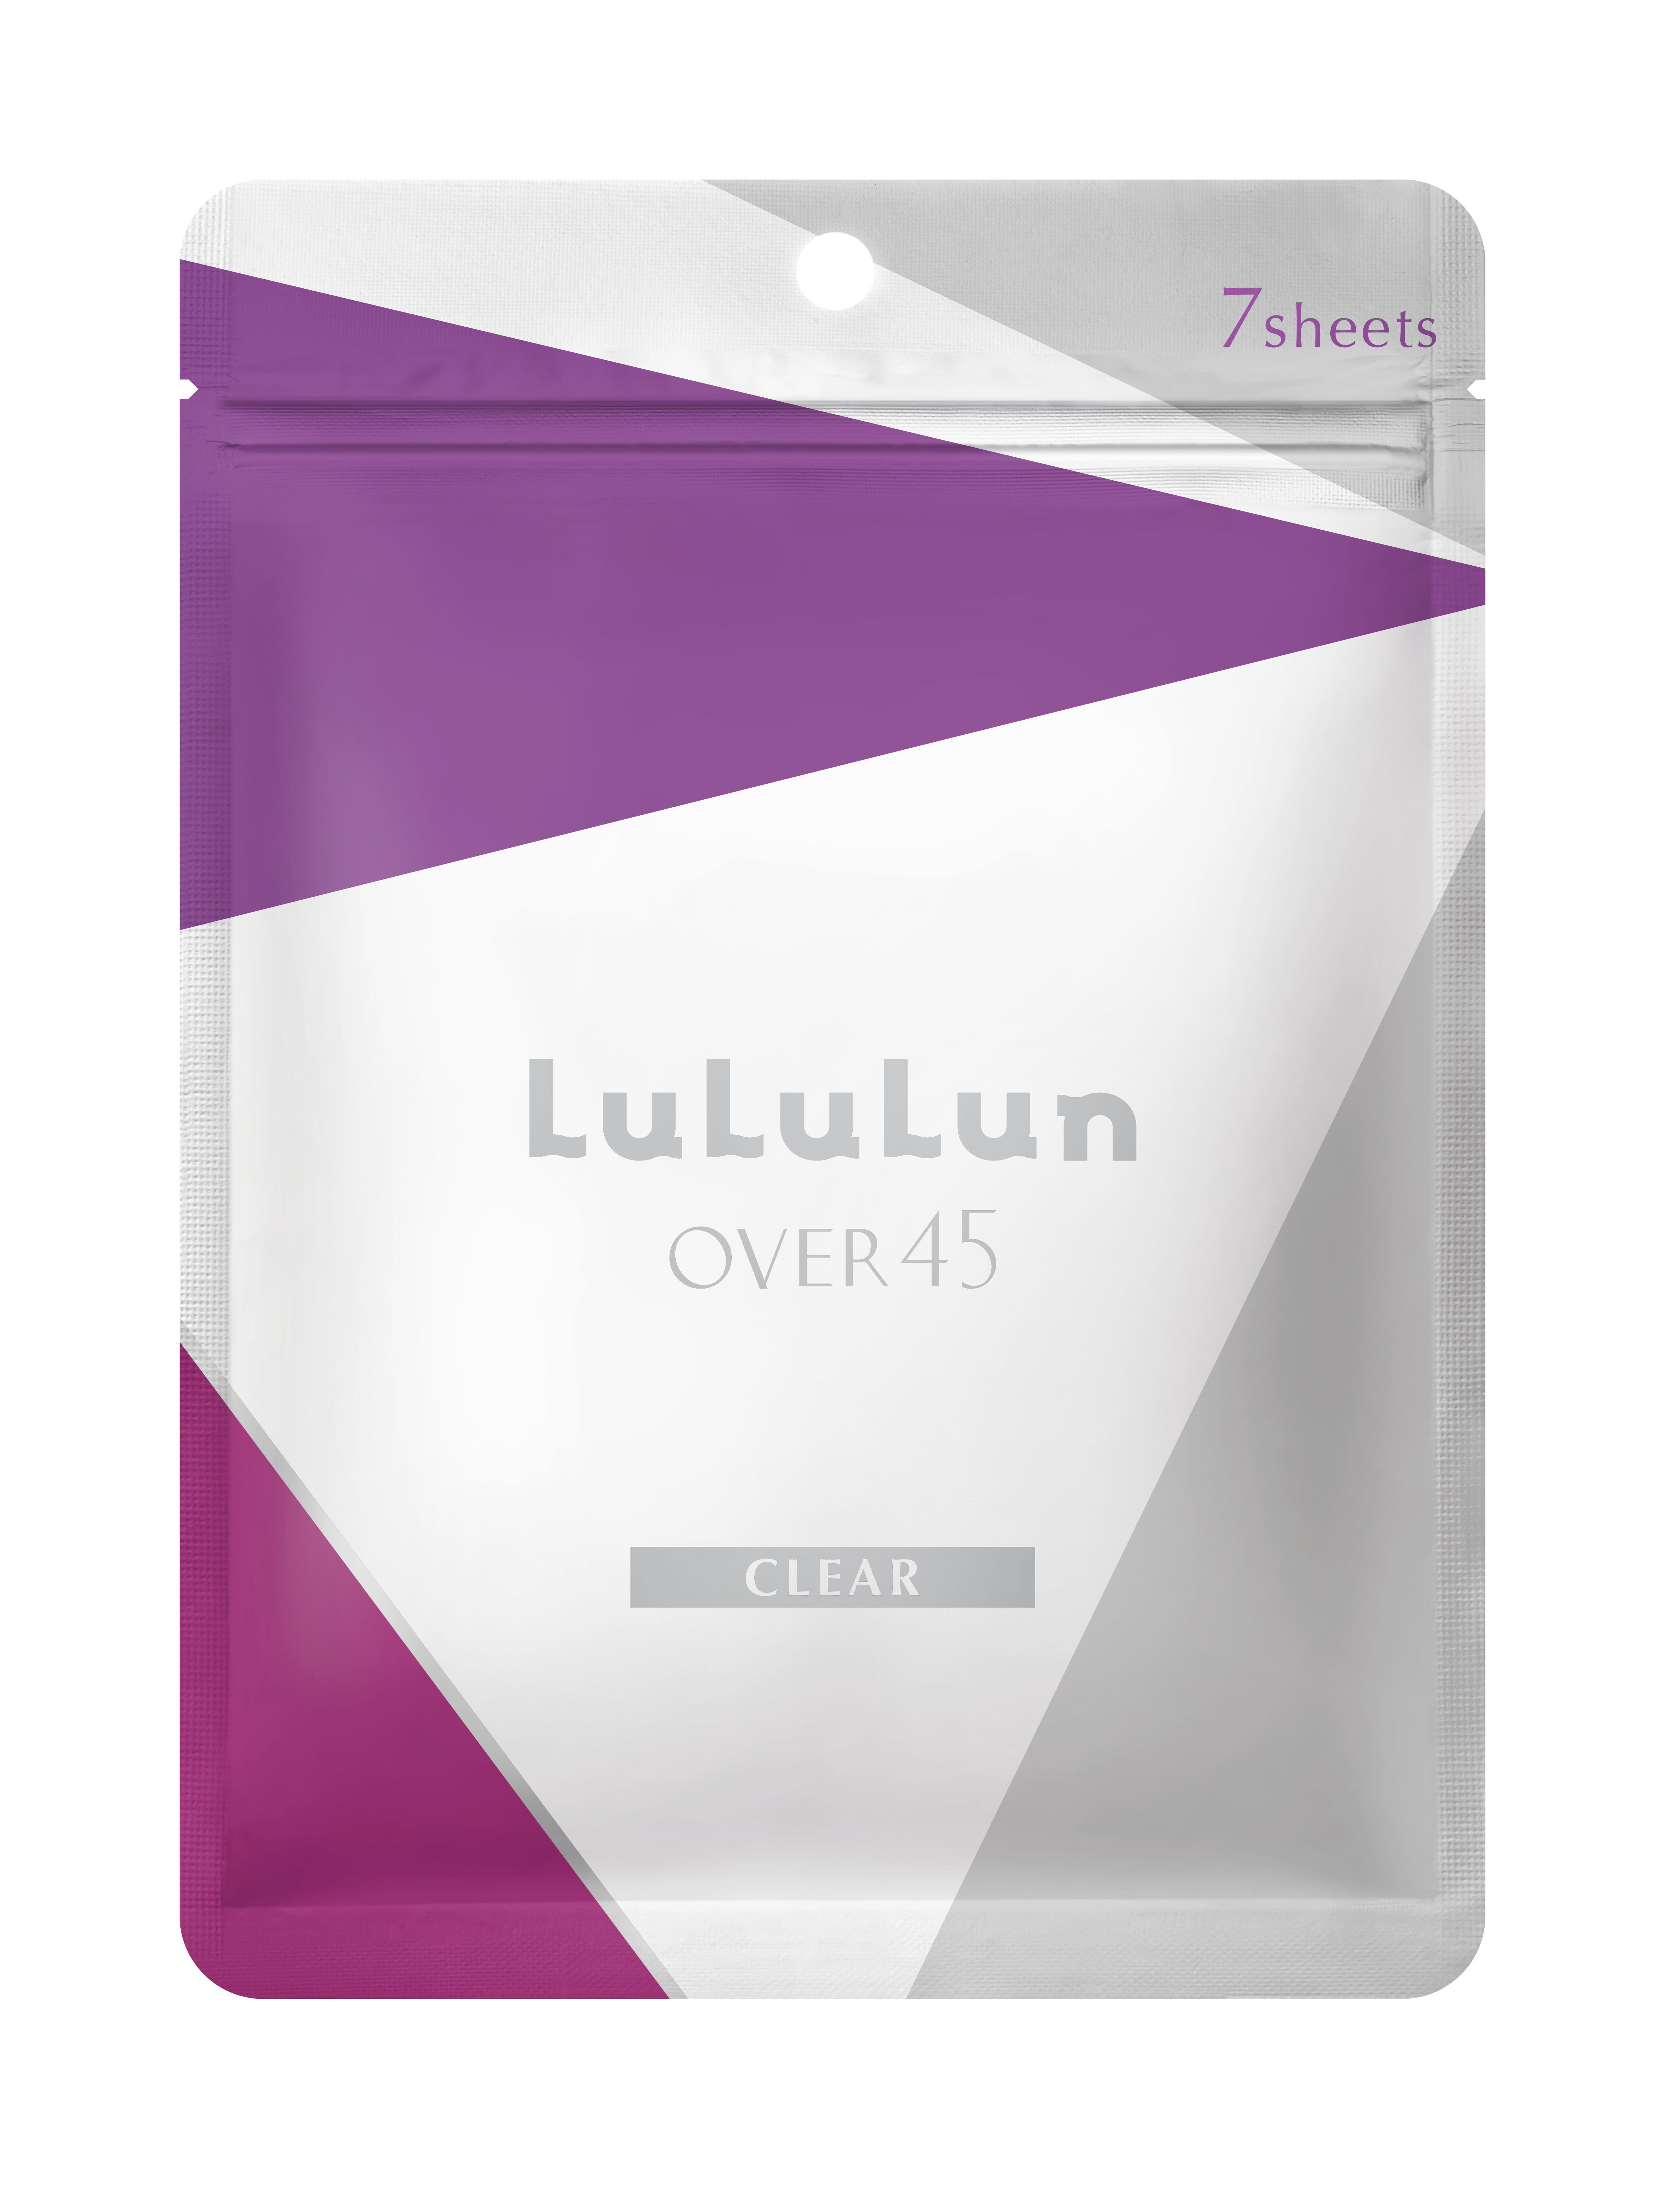 zhiduo набор тканевых масок для лица 5 штук антивозрастная осветляющая антисептическая Маска для лица Lululun Over 45, 7 шт/1 упаковка